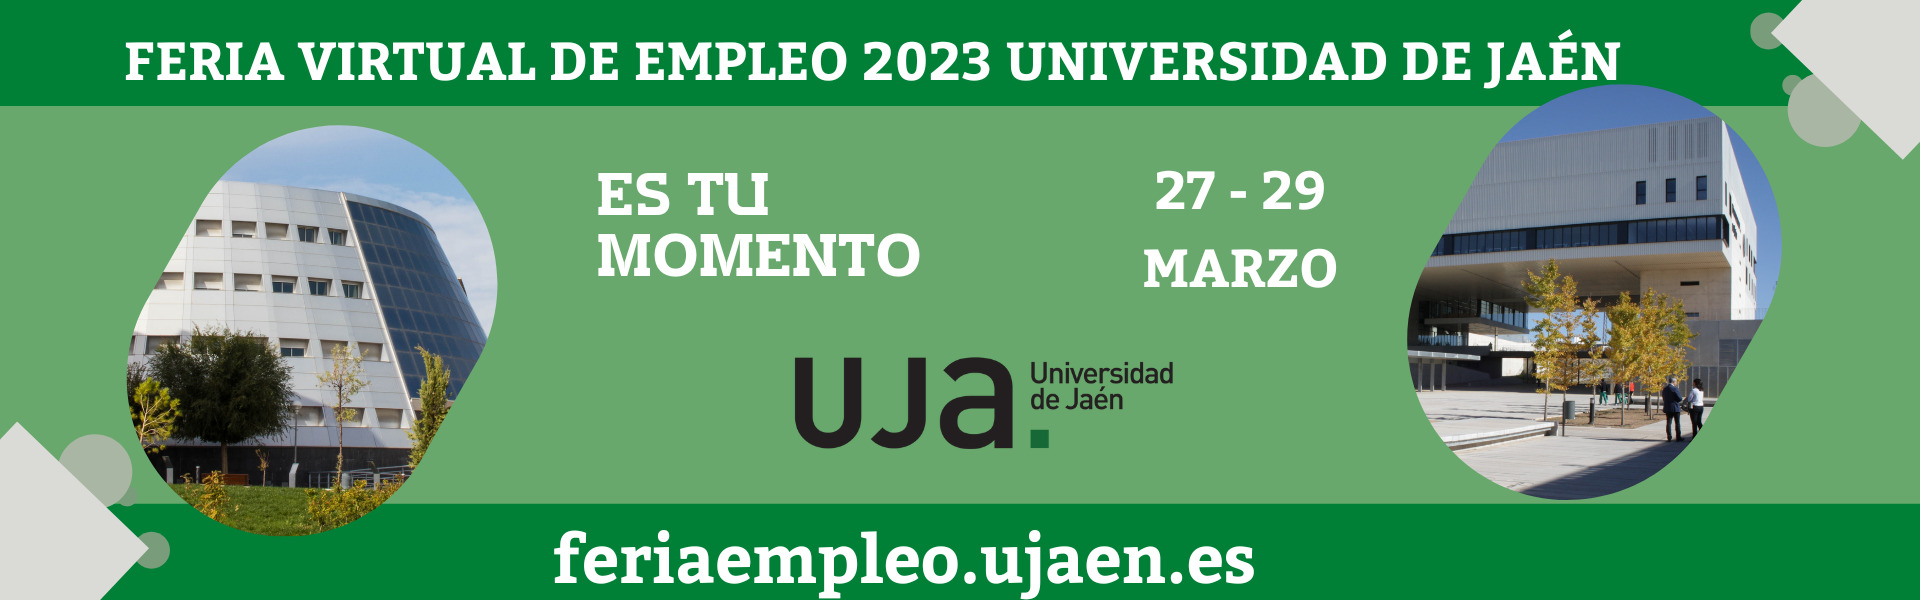 Feria Virtual de Empleo 2023 Universidad de Jaén